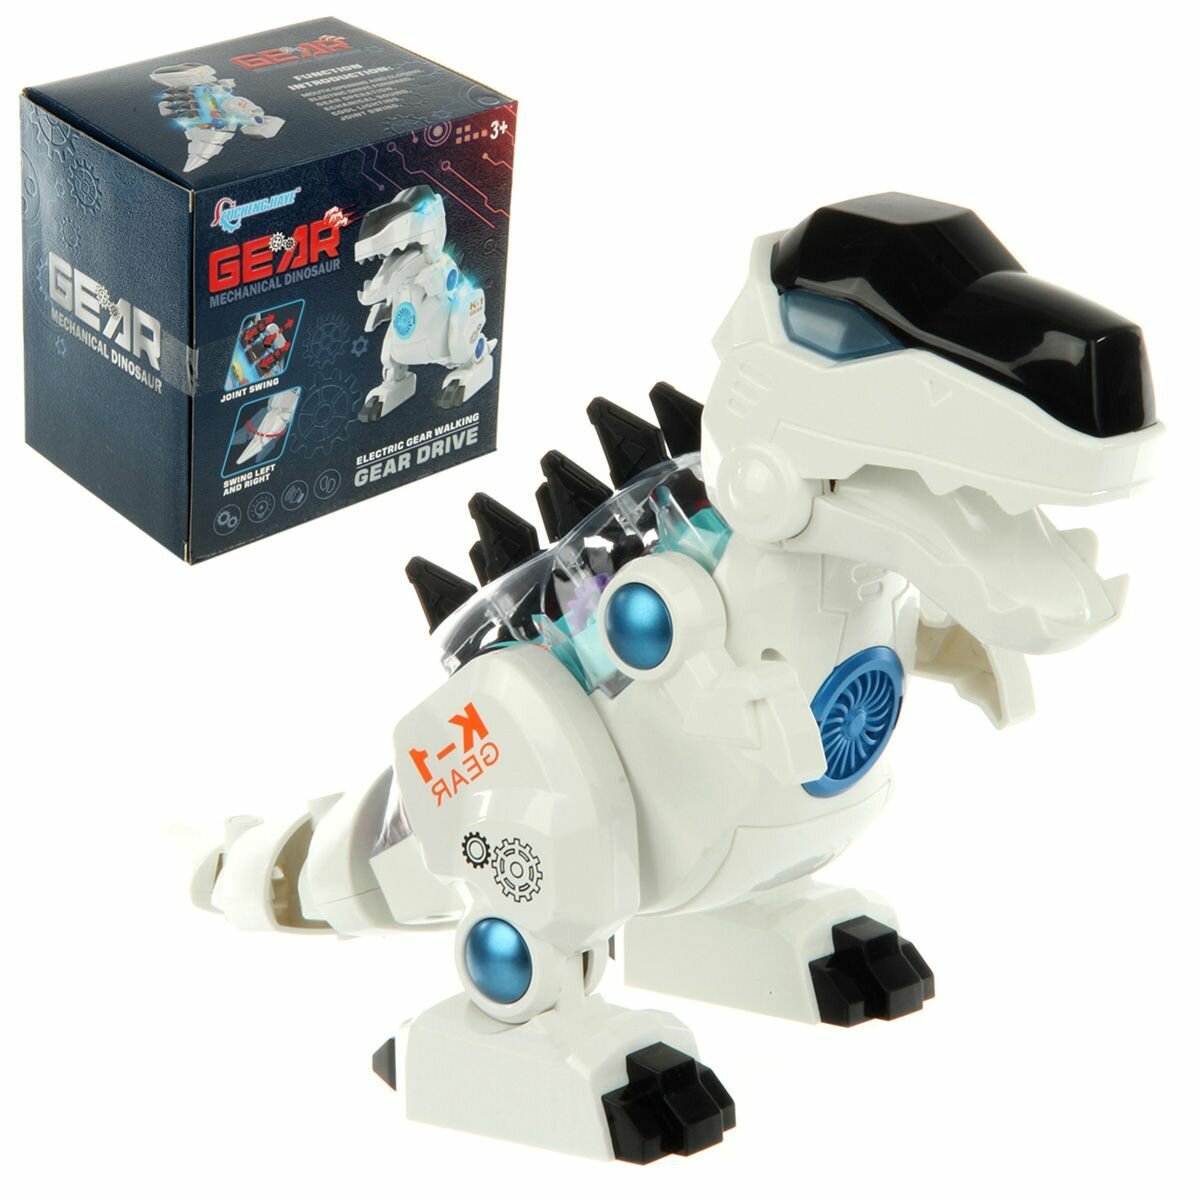 Динозавр на батарейках со светом и звуком, Veld Co / Робот на батарейках / Интерактивная игрушка